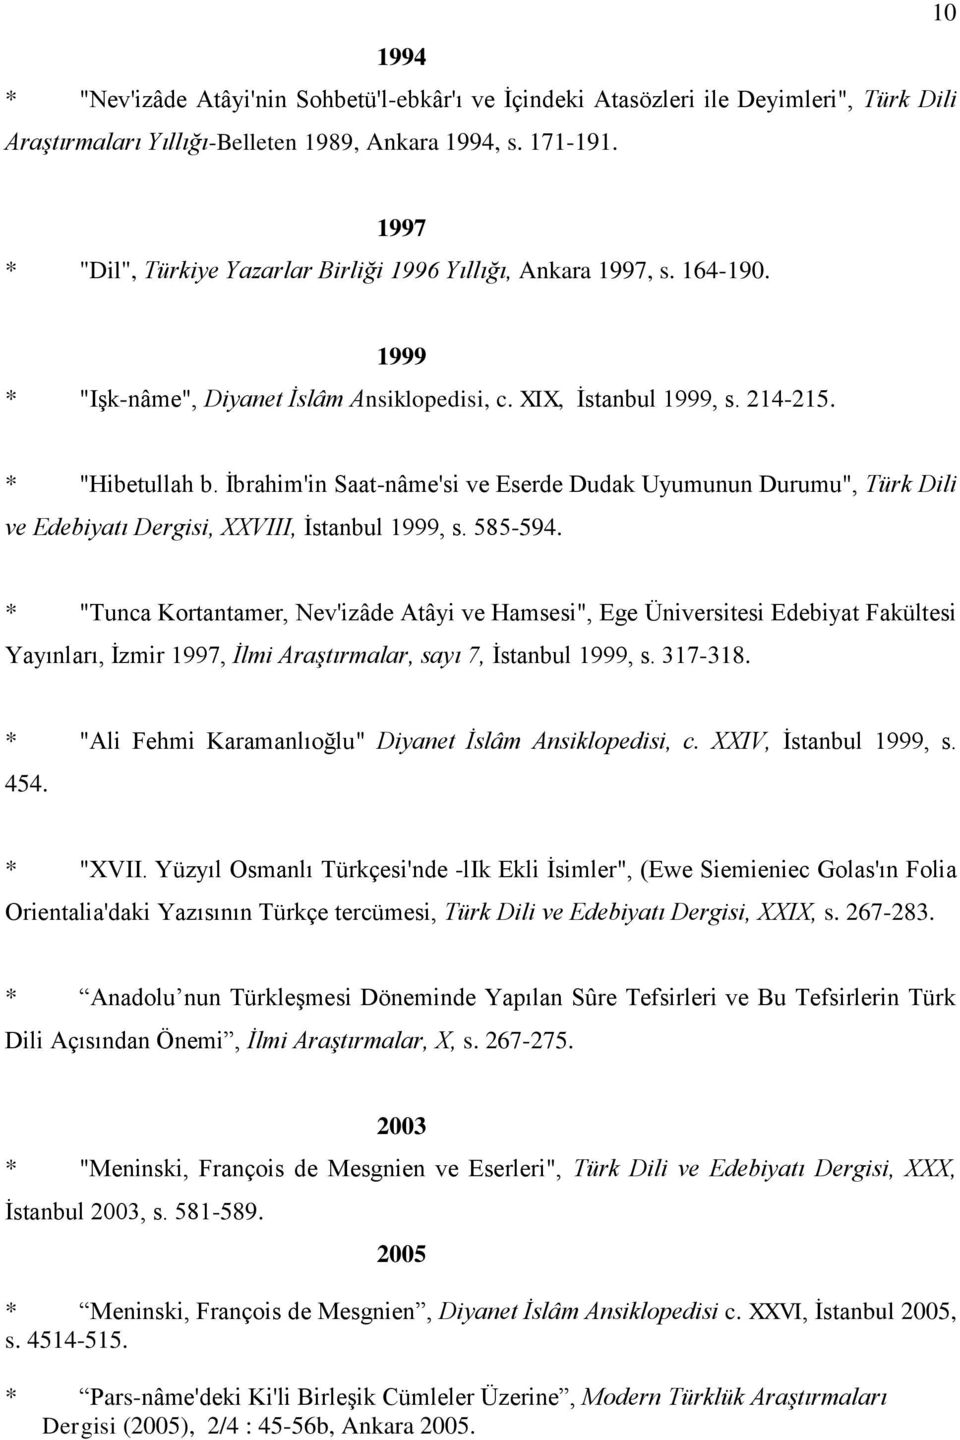 İbrahim'in Saat-nâme'si ve Eserde Dudak Uyumunun Durumu", Türk Dili ve Edebiyatı Dergisi, XXVIII, İstanbul 1999, s. 585-594.